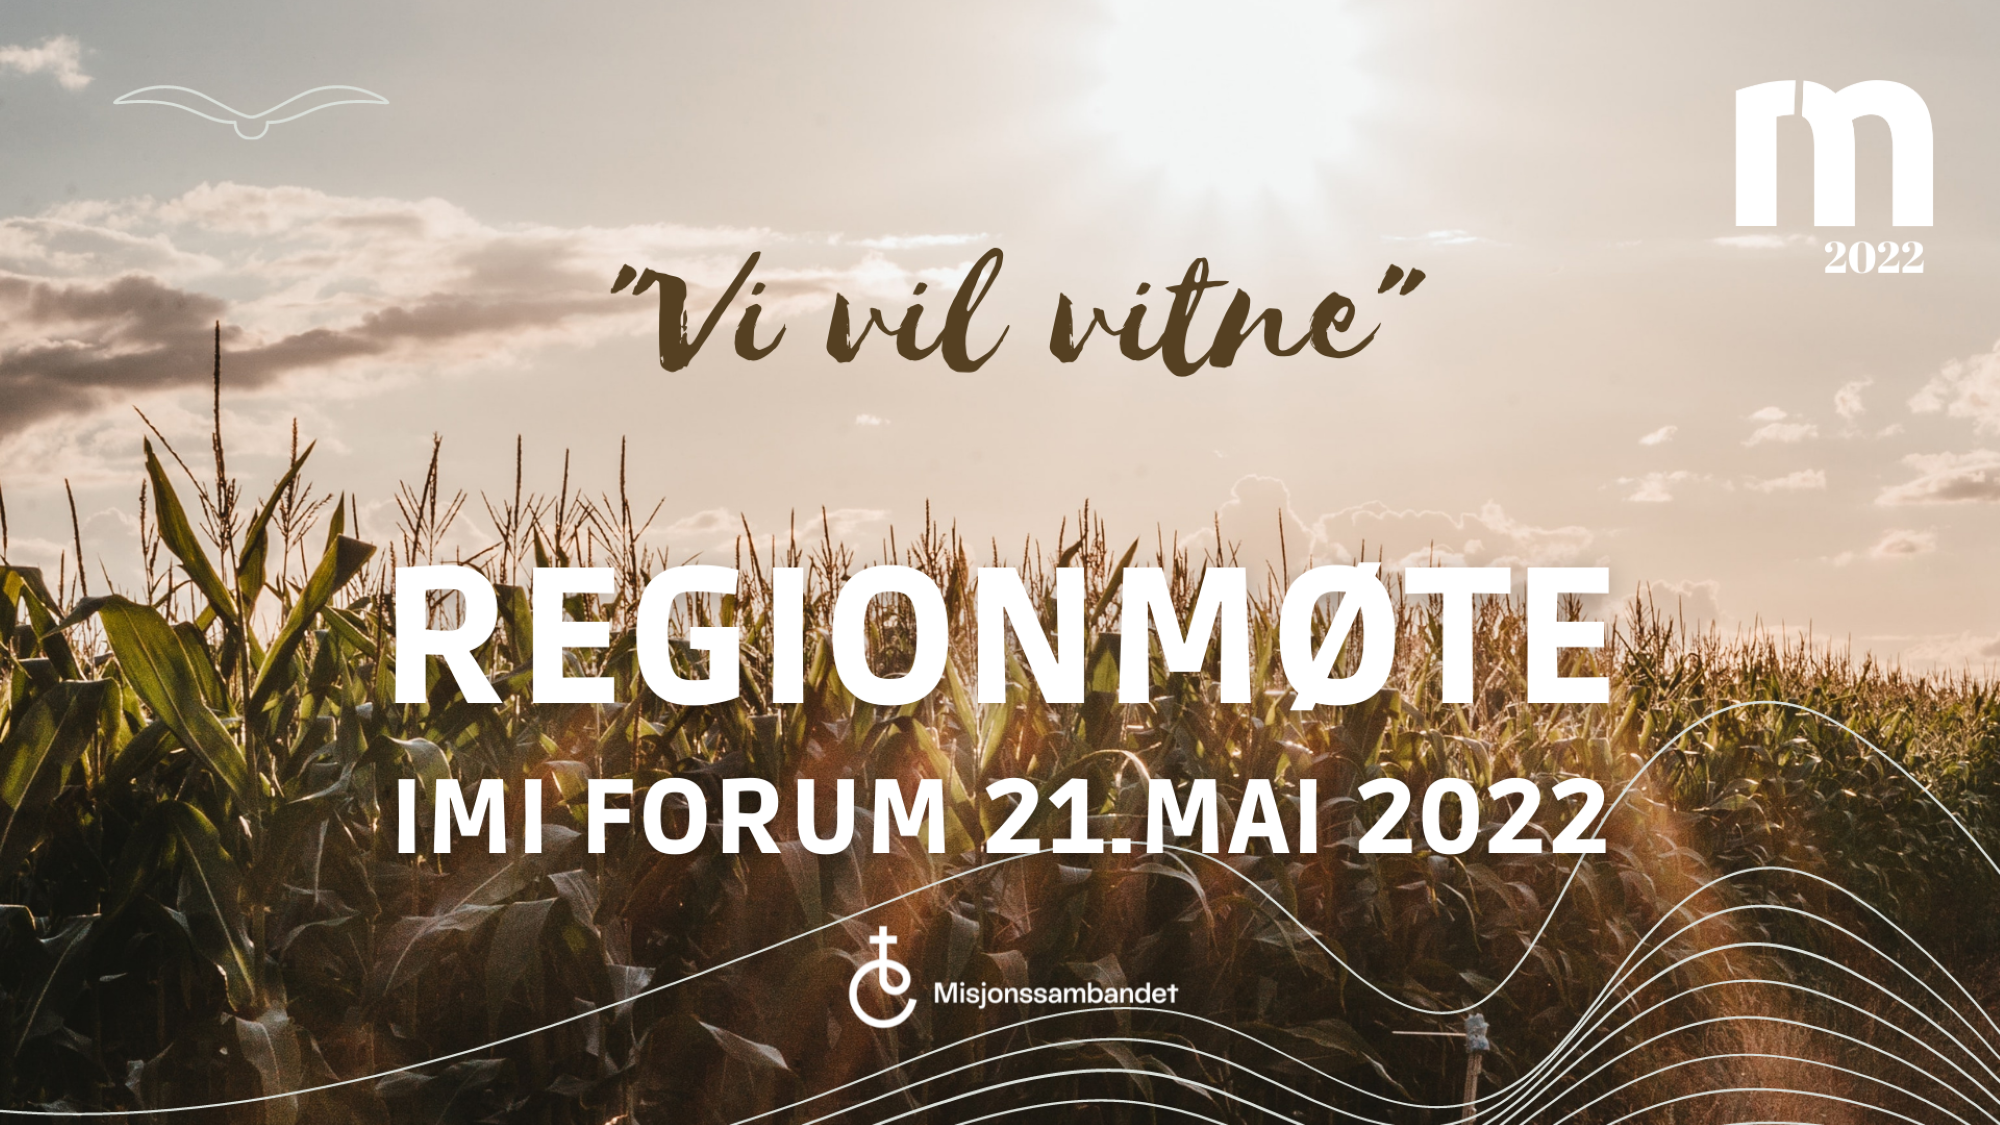 Plakat med tekst regionmøtet 2022